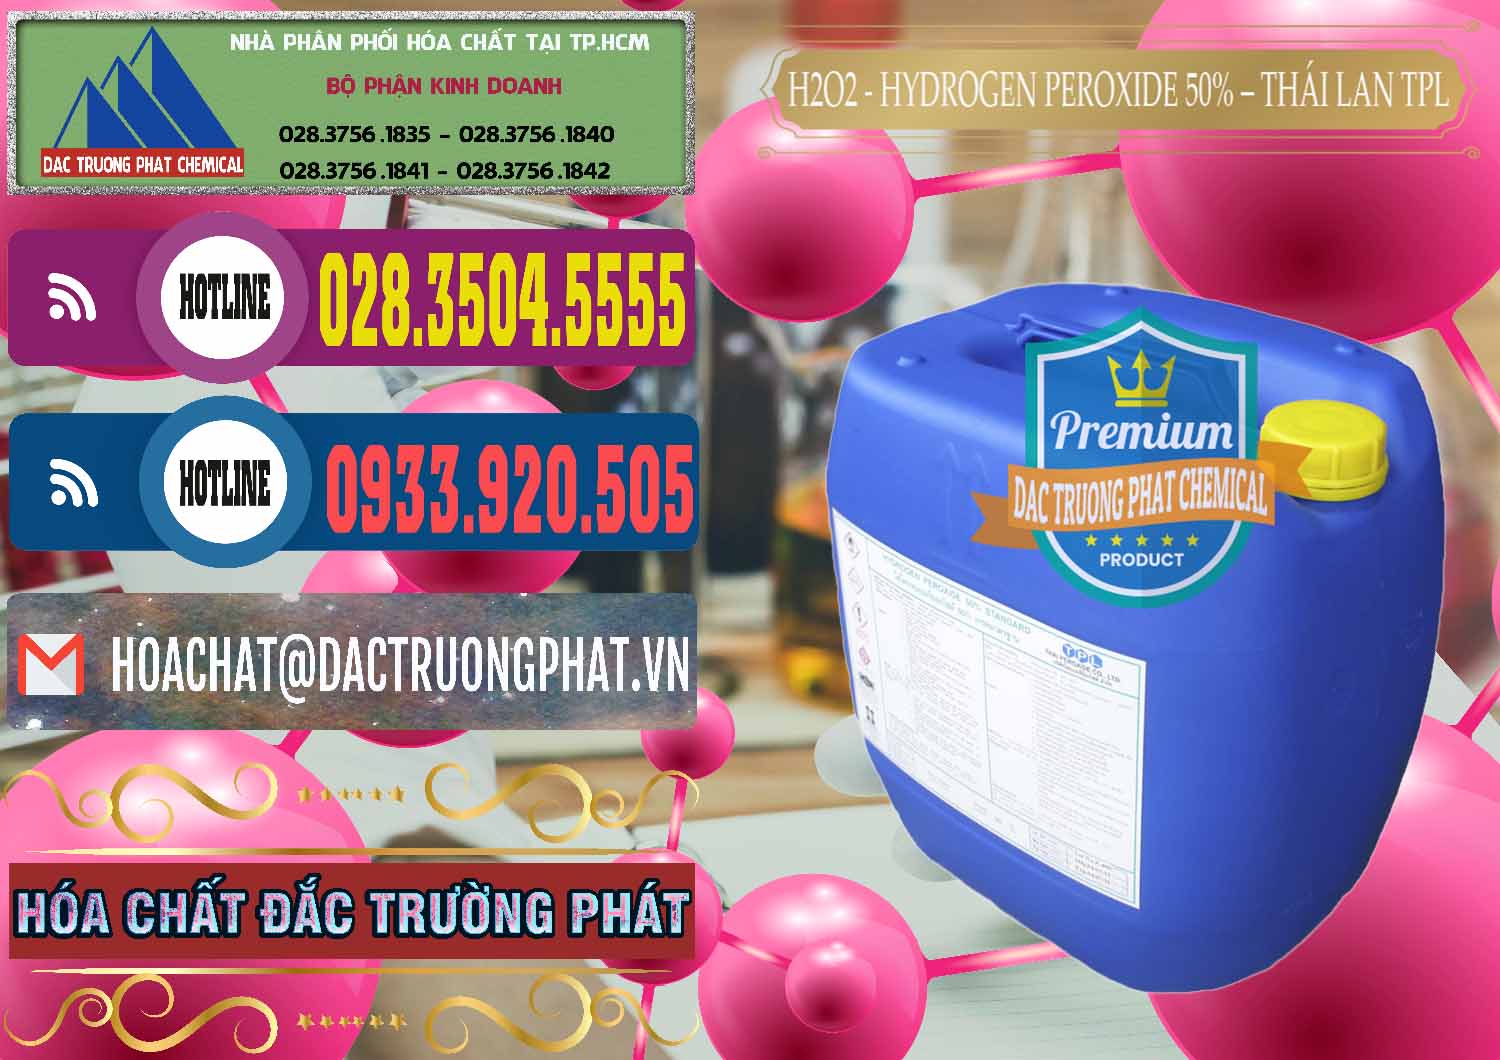 Cty chuyên phân phối & bán H2O2 - Hydrogen Peroxide 50% Thái Lan TPL - 0076 - Chuyên phân phối _ cung ứng hóa chất tại TP.HCM - muabanhoachat.com.vn